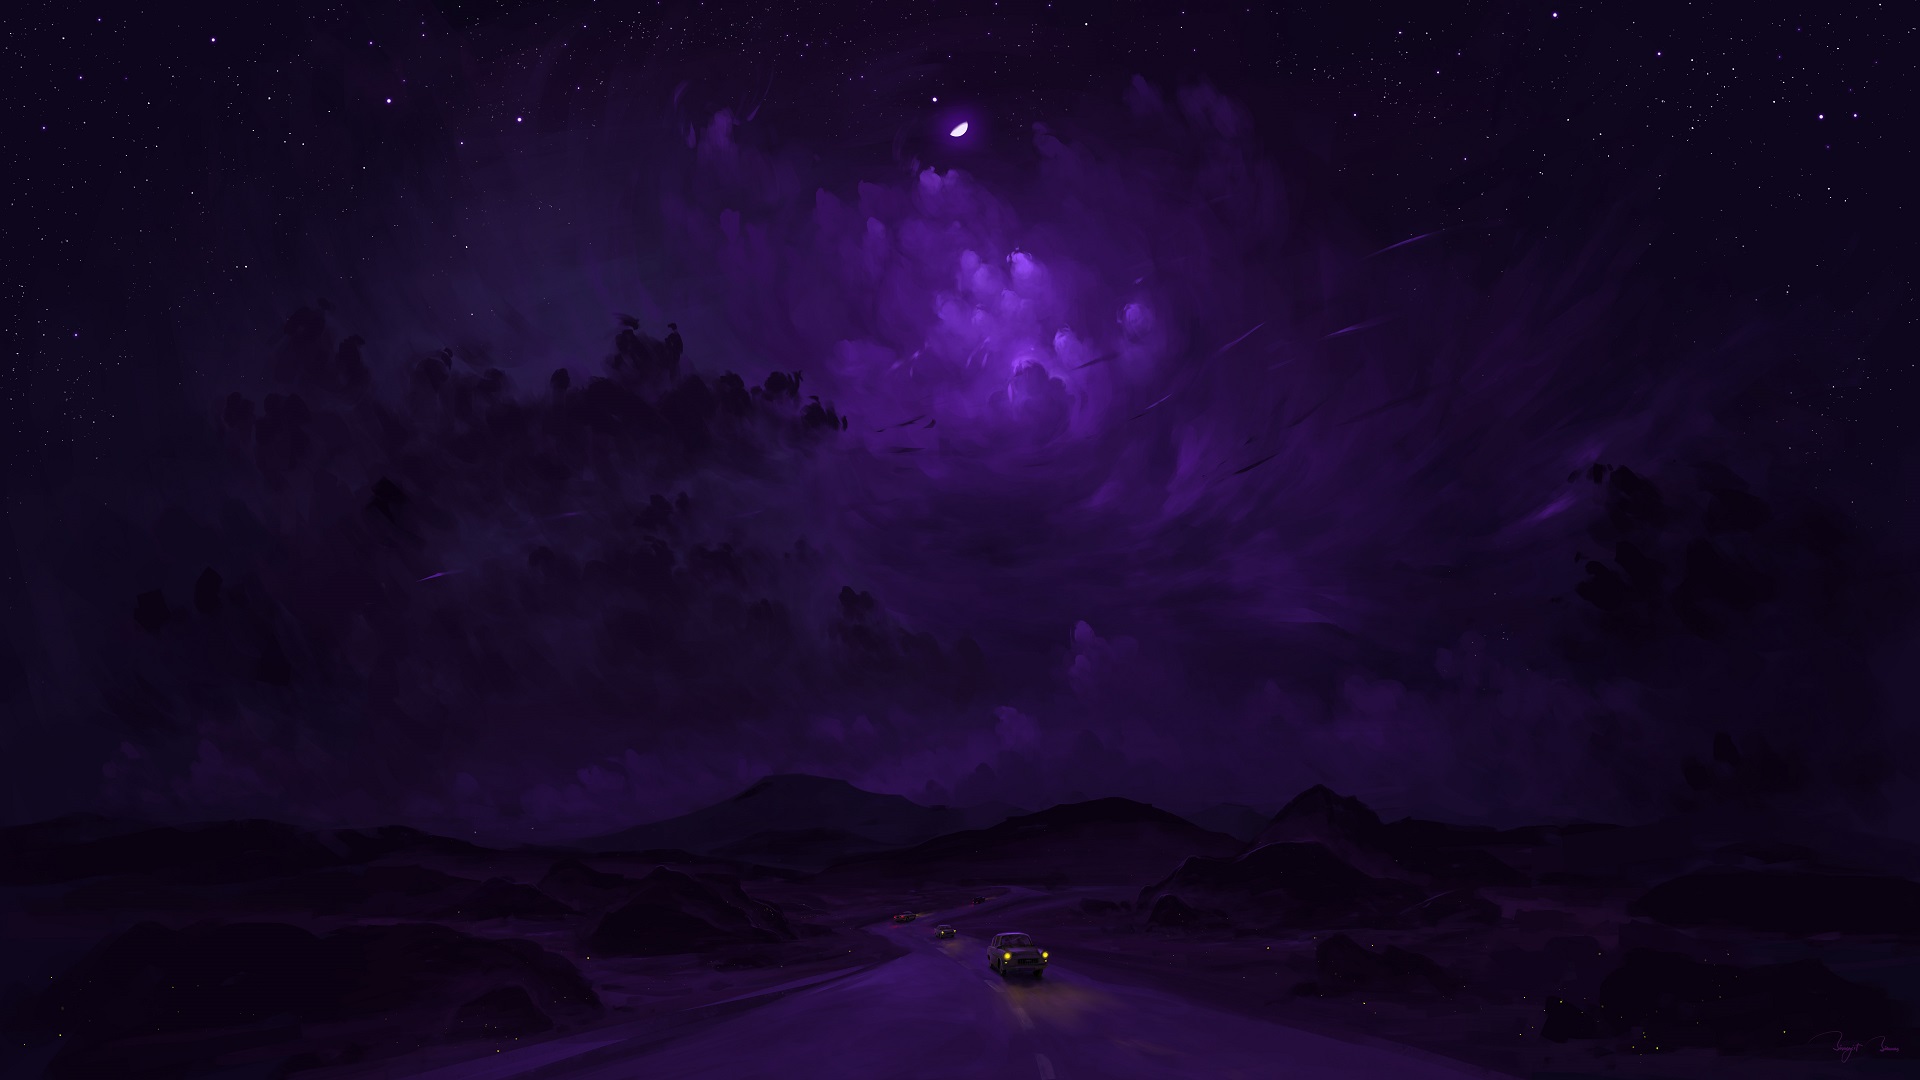 General 1920x1080 BisBiswas digital art painting dusk road clouds car moonlight Moon stars